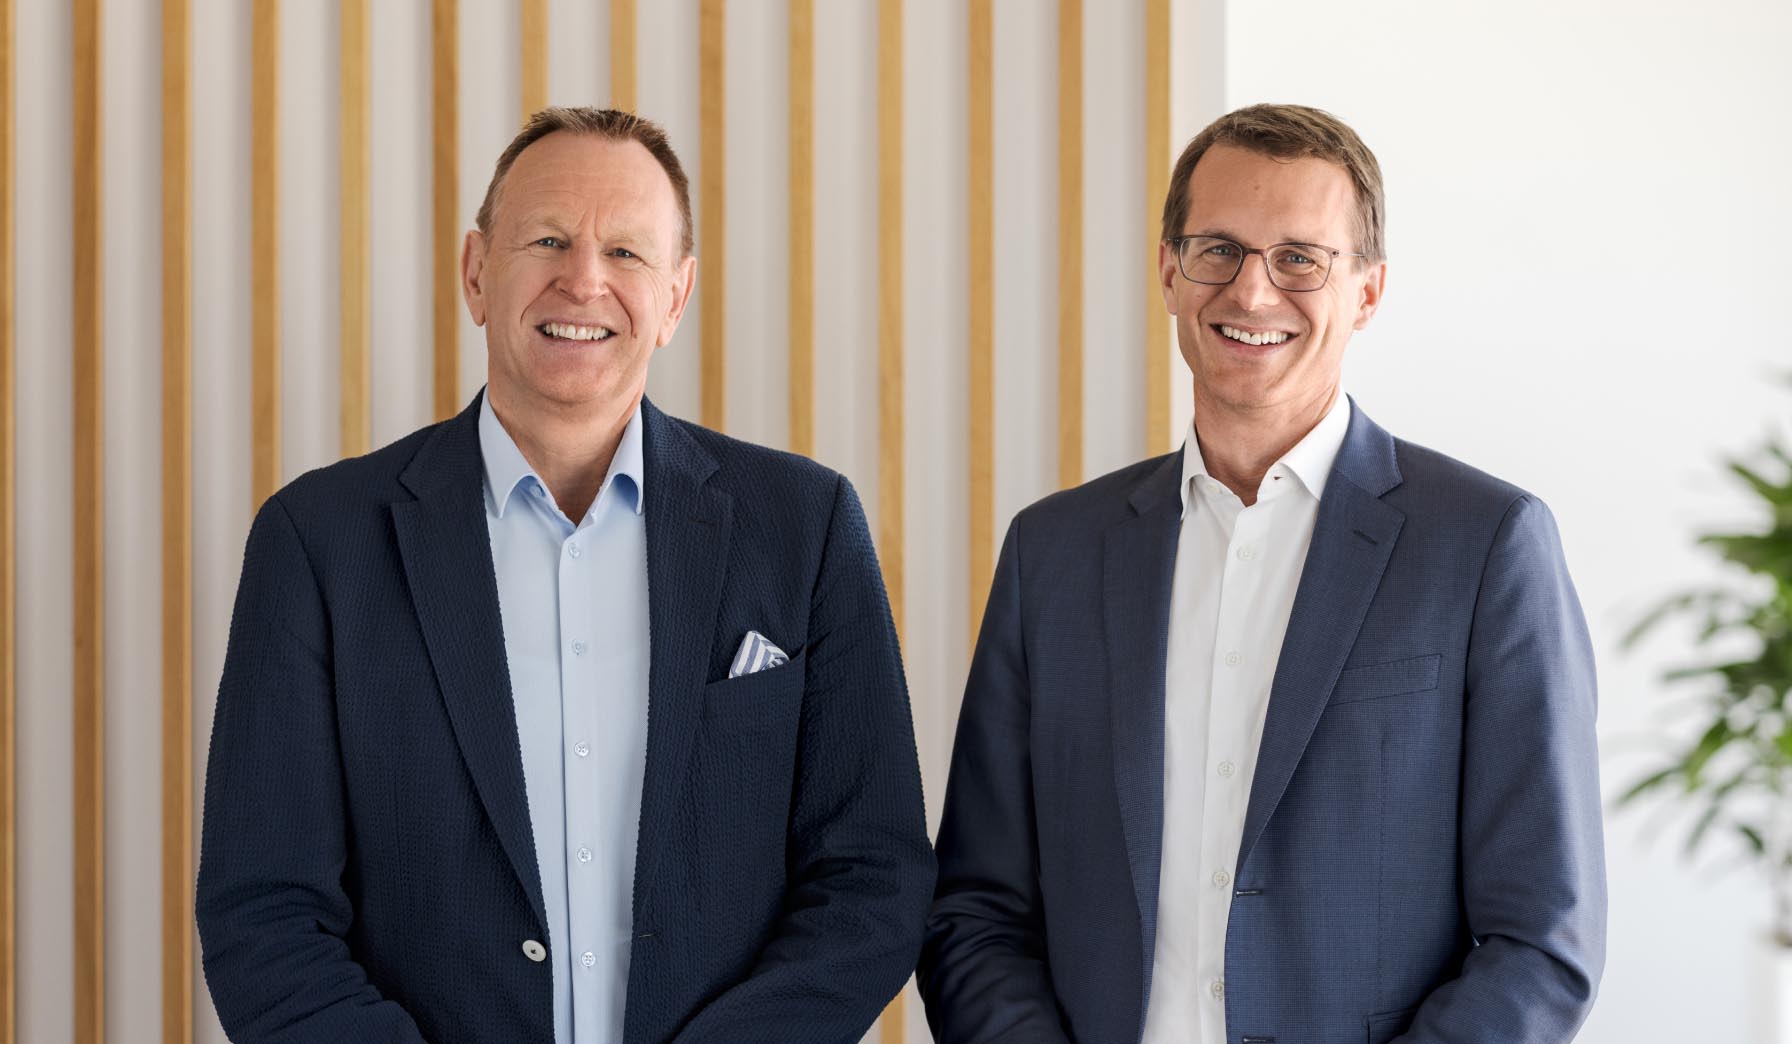 From left: Michael Rechsteiner, Chairman of the Board of Directors Swisscom Ltd and Christoph Aeschlimann, CEO Swisscom Ltd